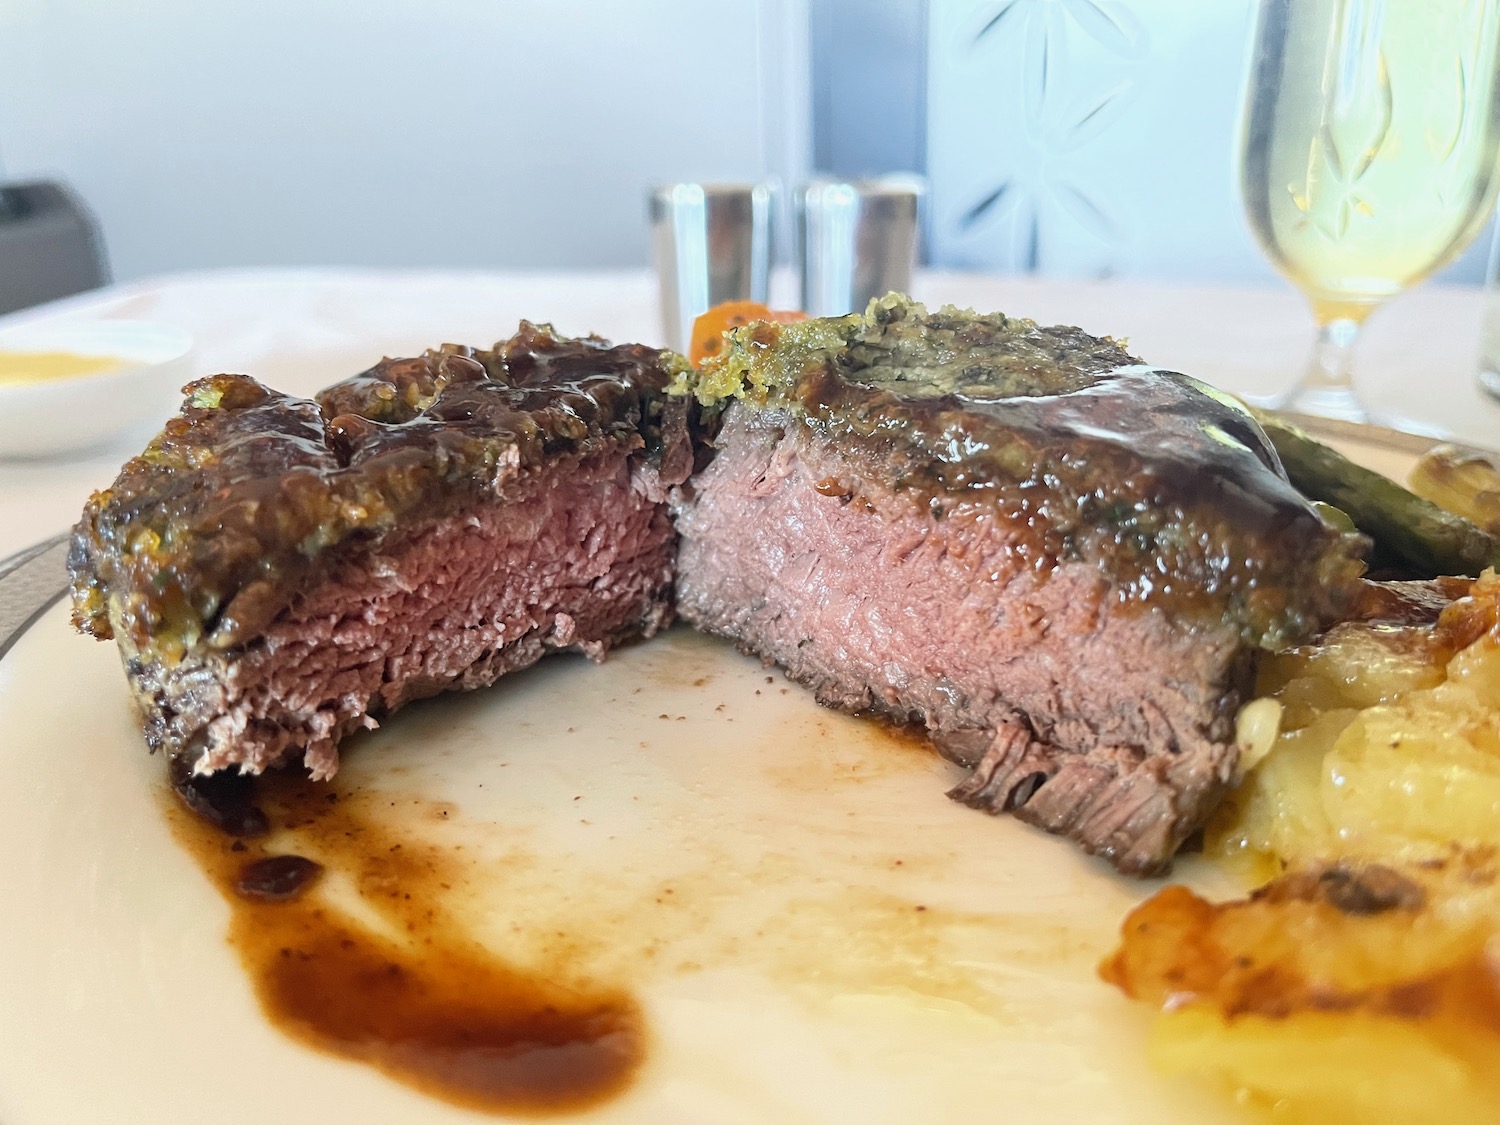 a steak cut in half on a plate